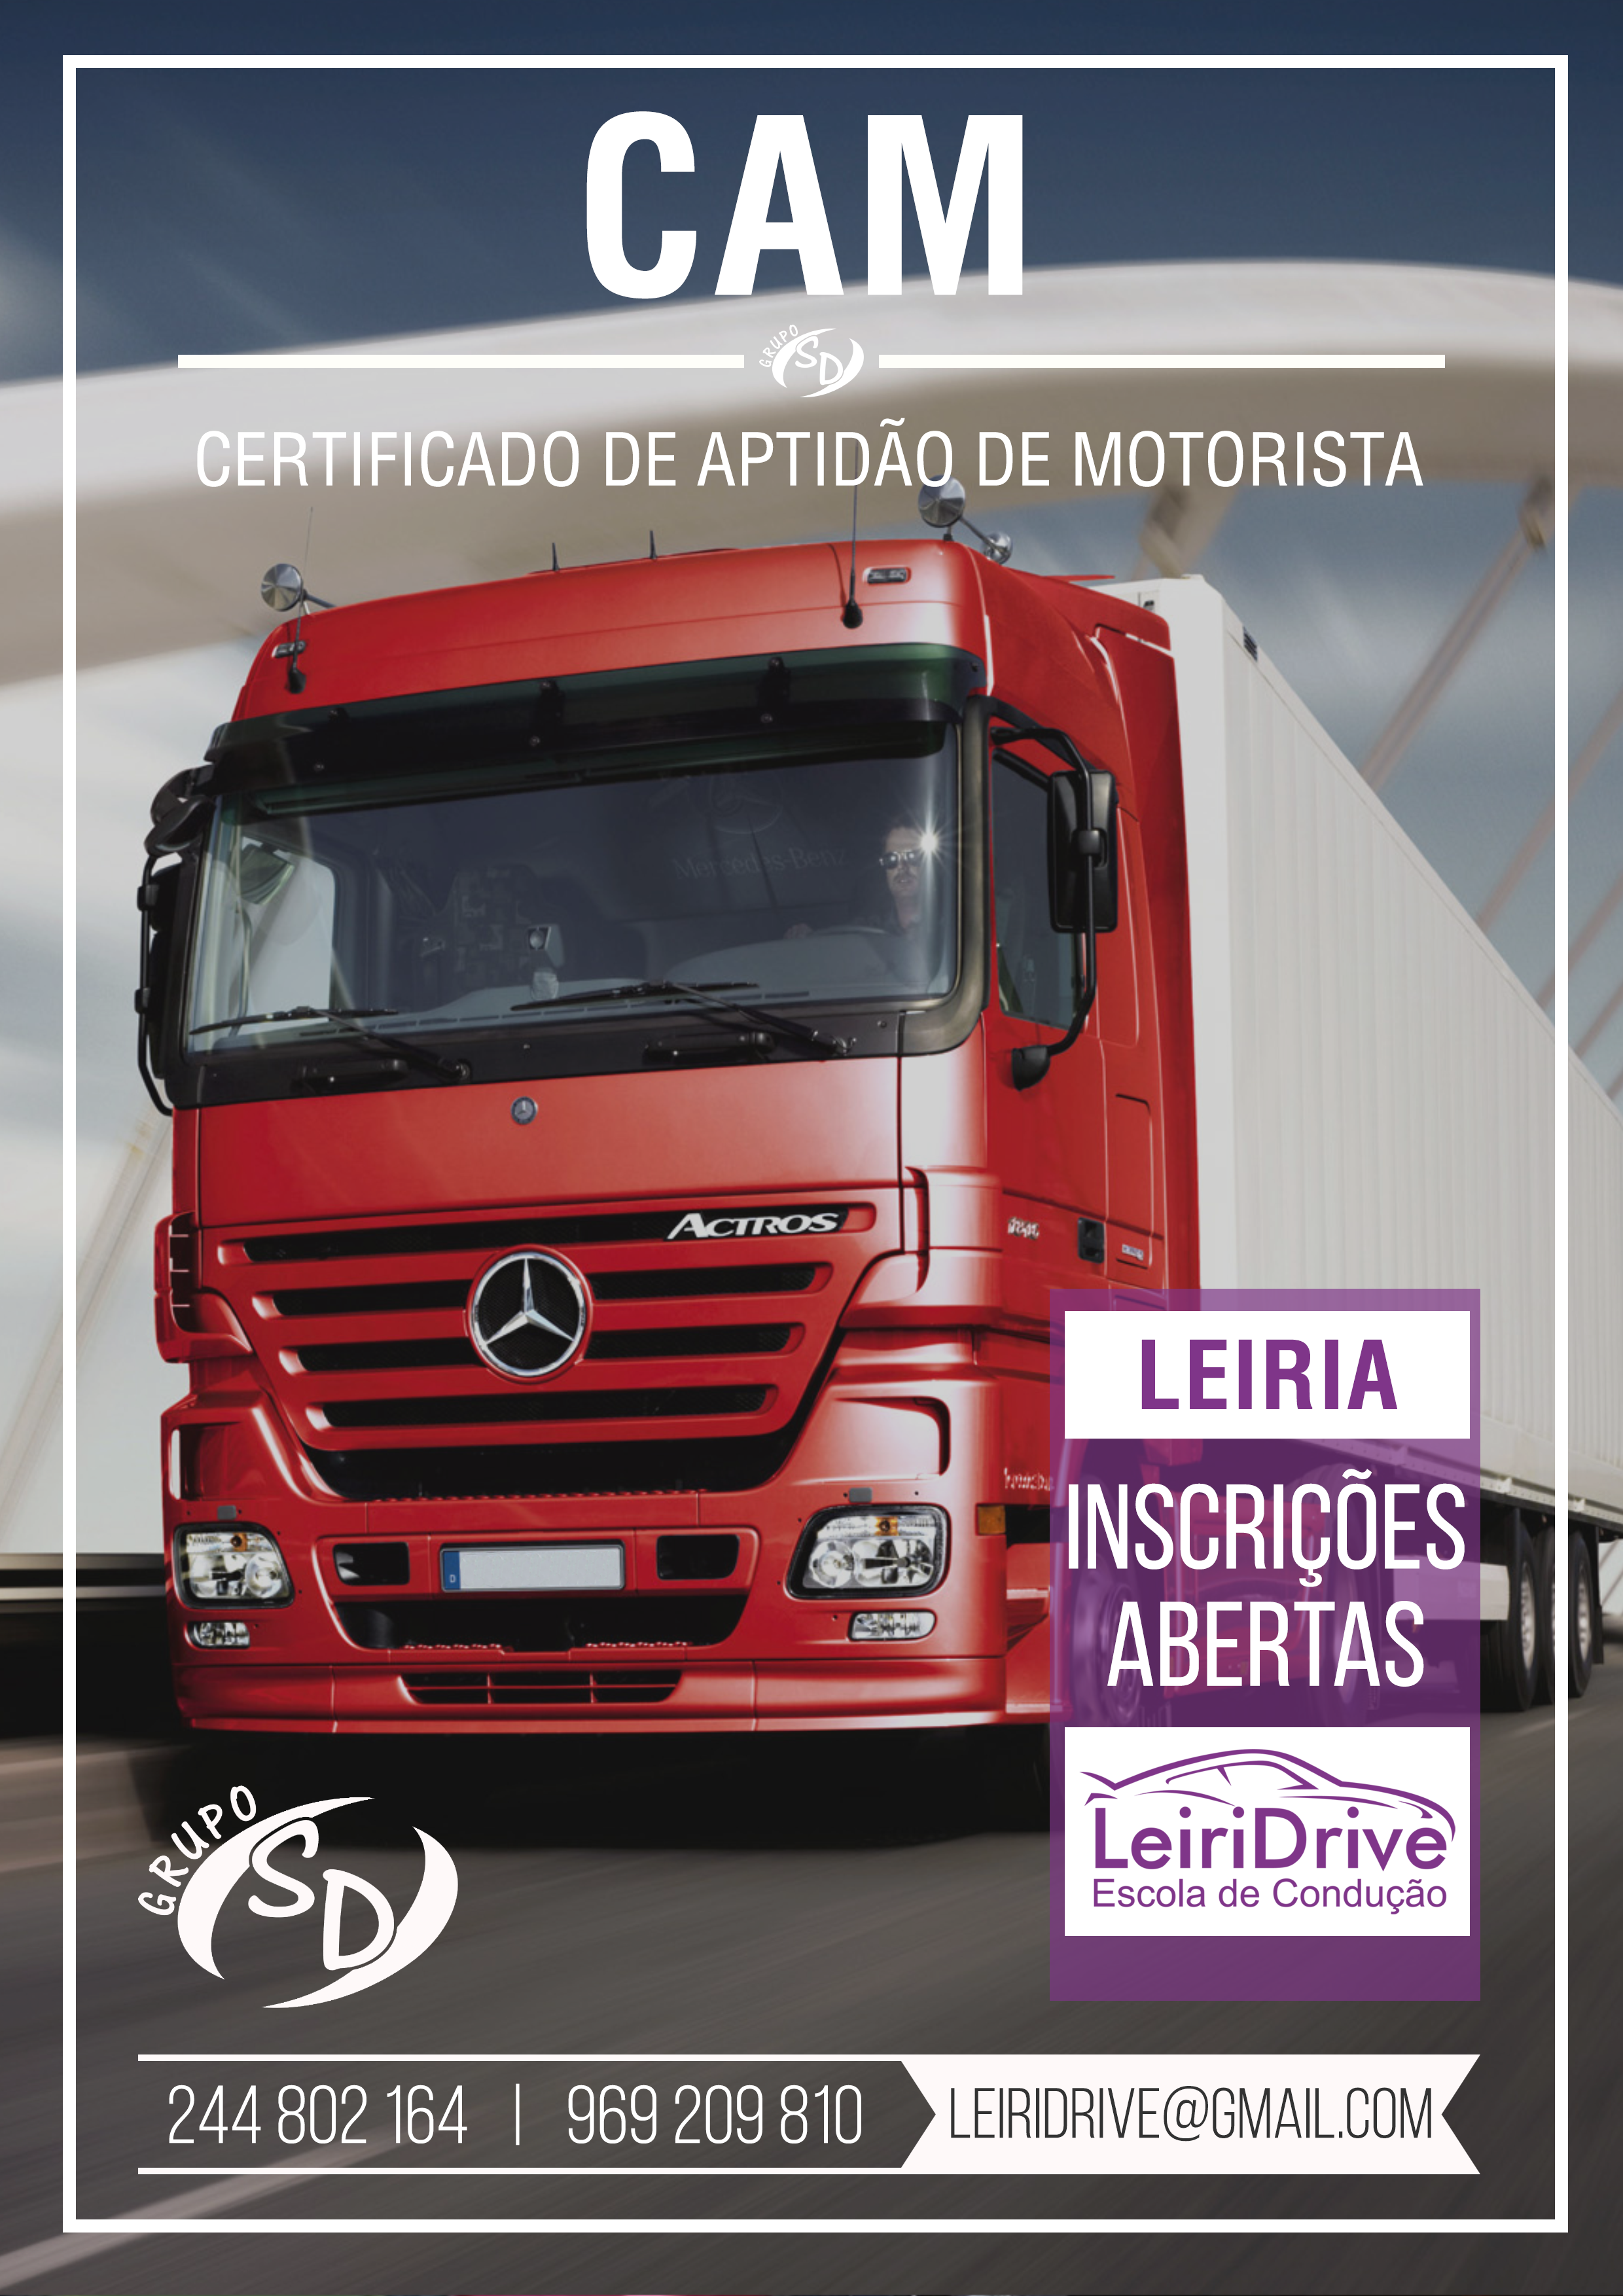 CAM - Certificação de Aptidão para Motorista - Leiridrive